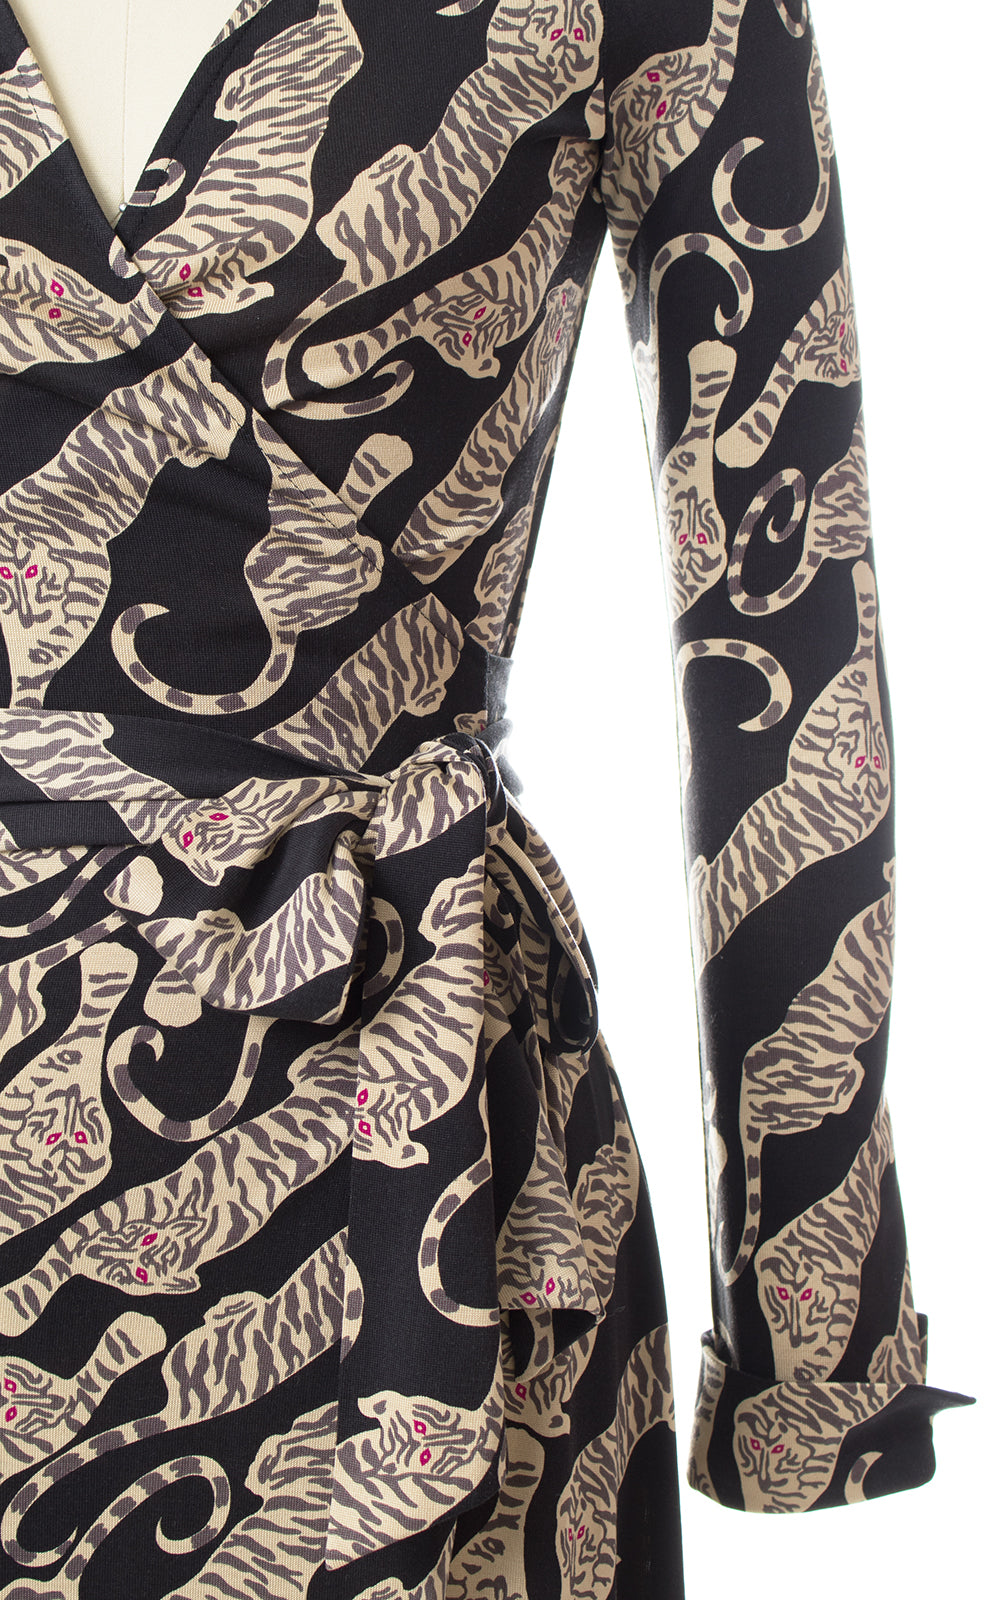 Vintage Diane von Furstenberg Tiger Novelty Print Silk Jersey Wrap Dress